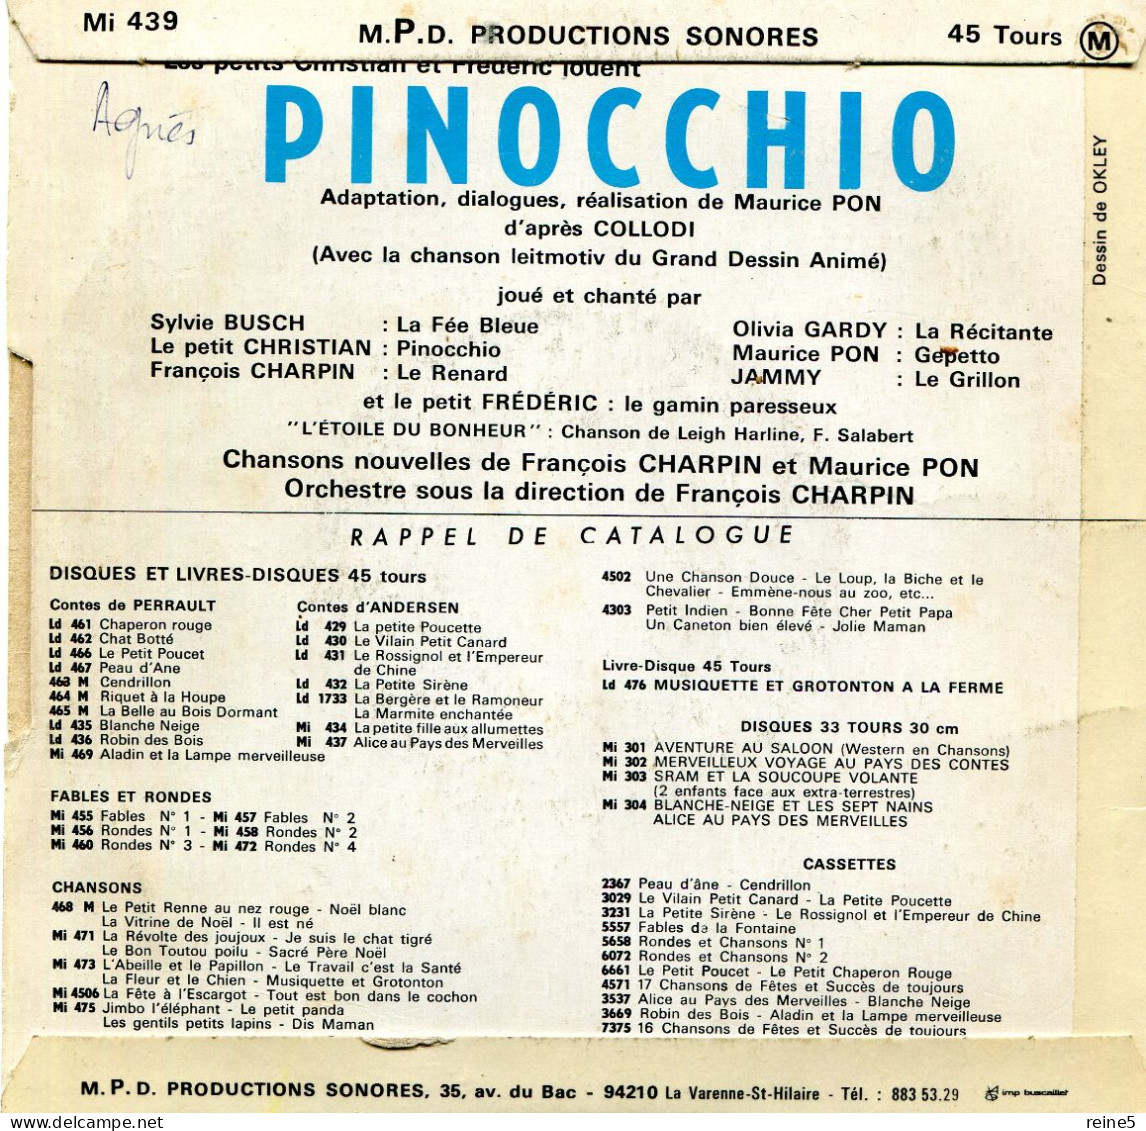 PINOCCHIO Avec LA CHANSON DU FILM >> VINYLE & POCHETTE BON USAGE REF-LEX-71-71A - Kinderlieder